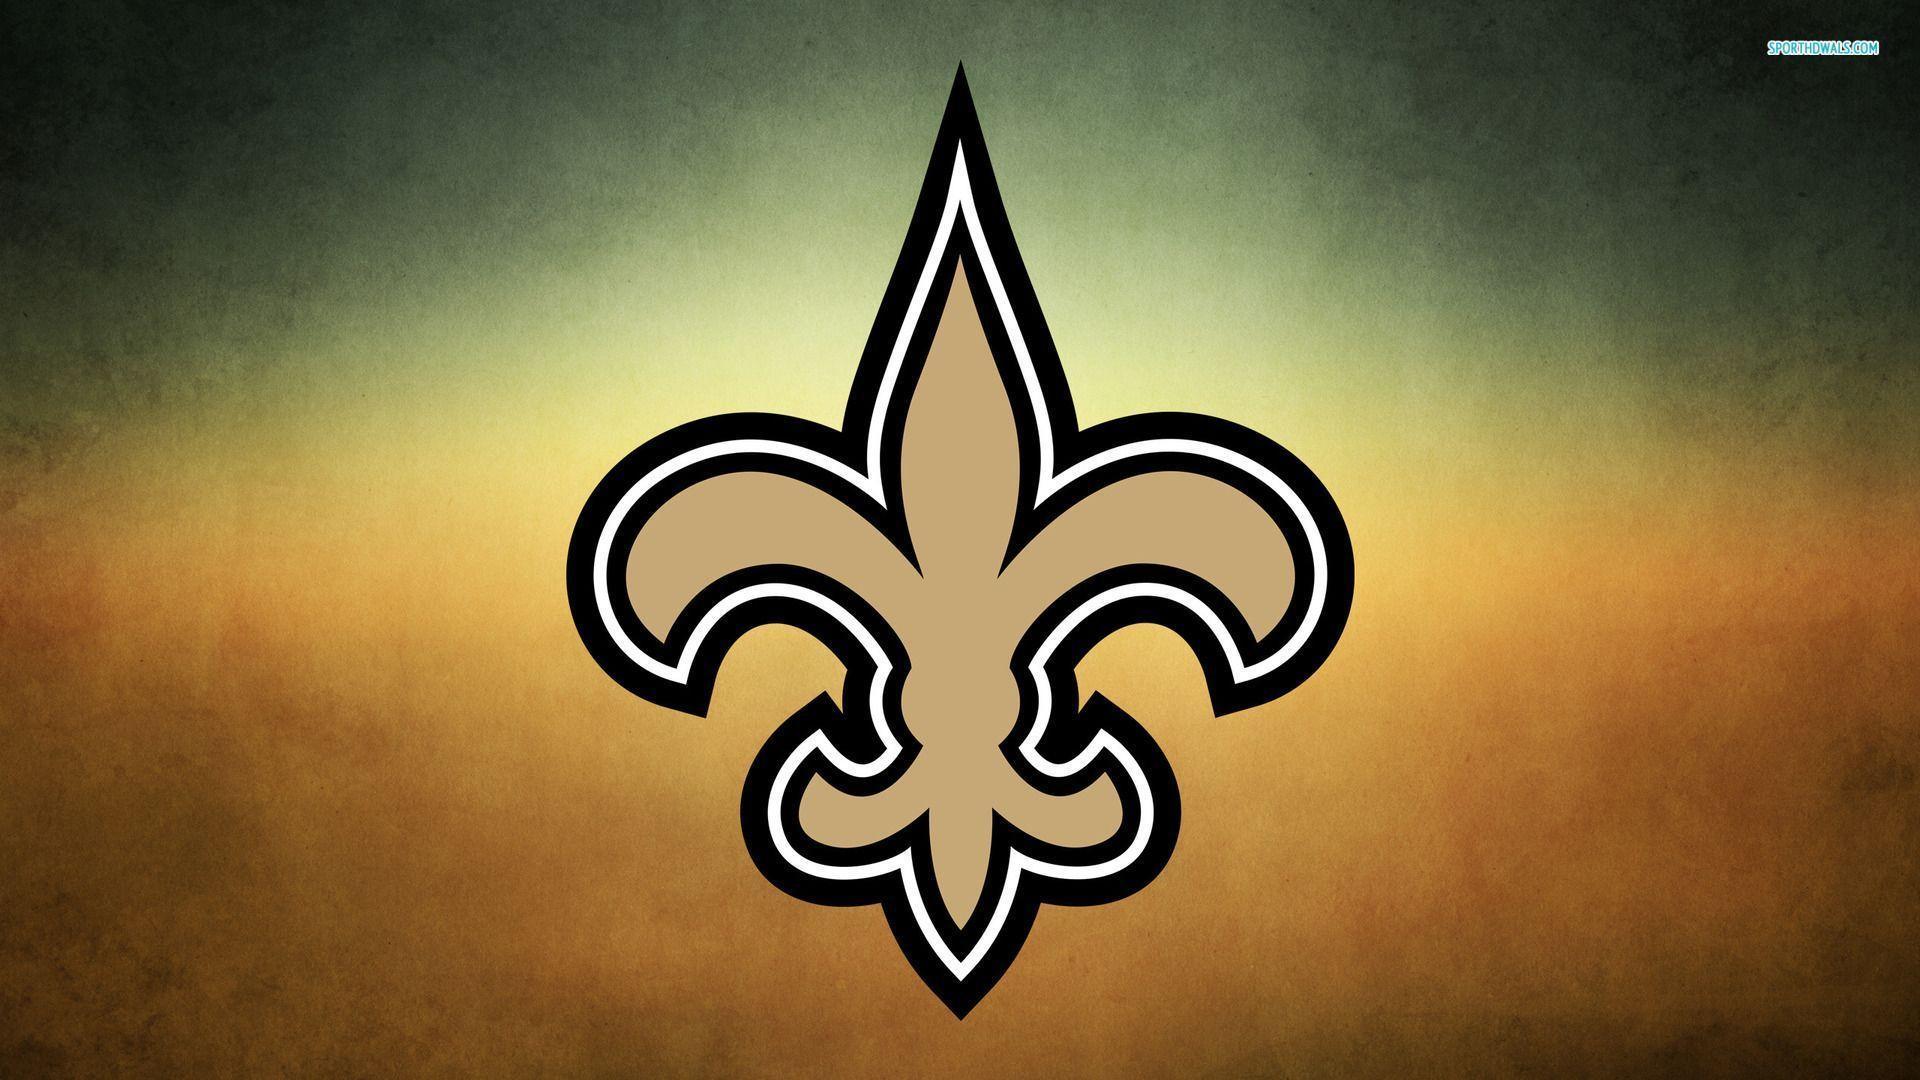 New Orleans Saints 341 1920x